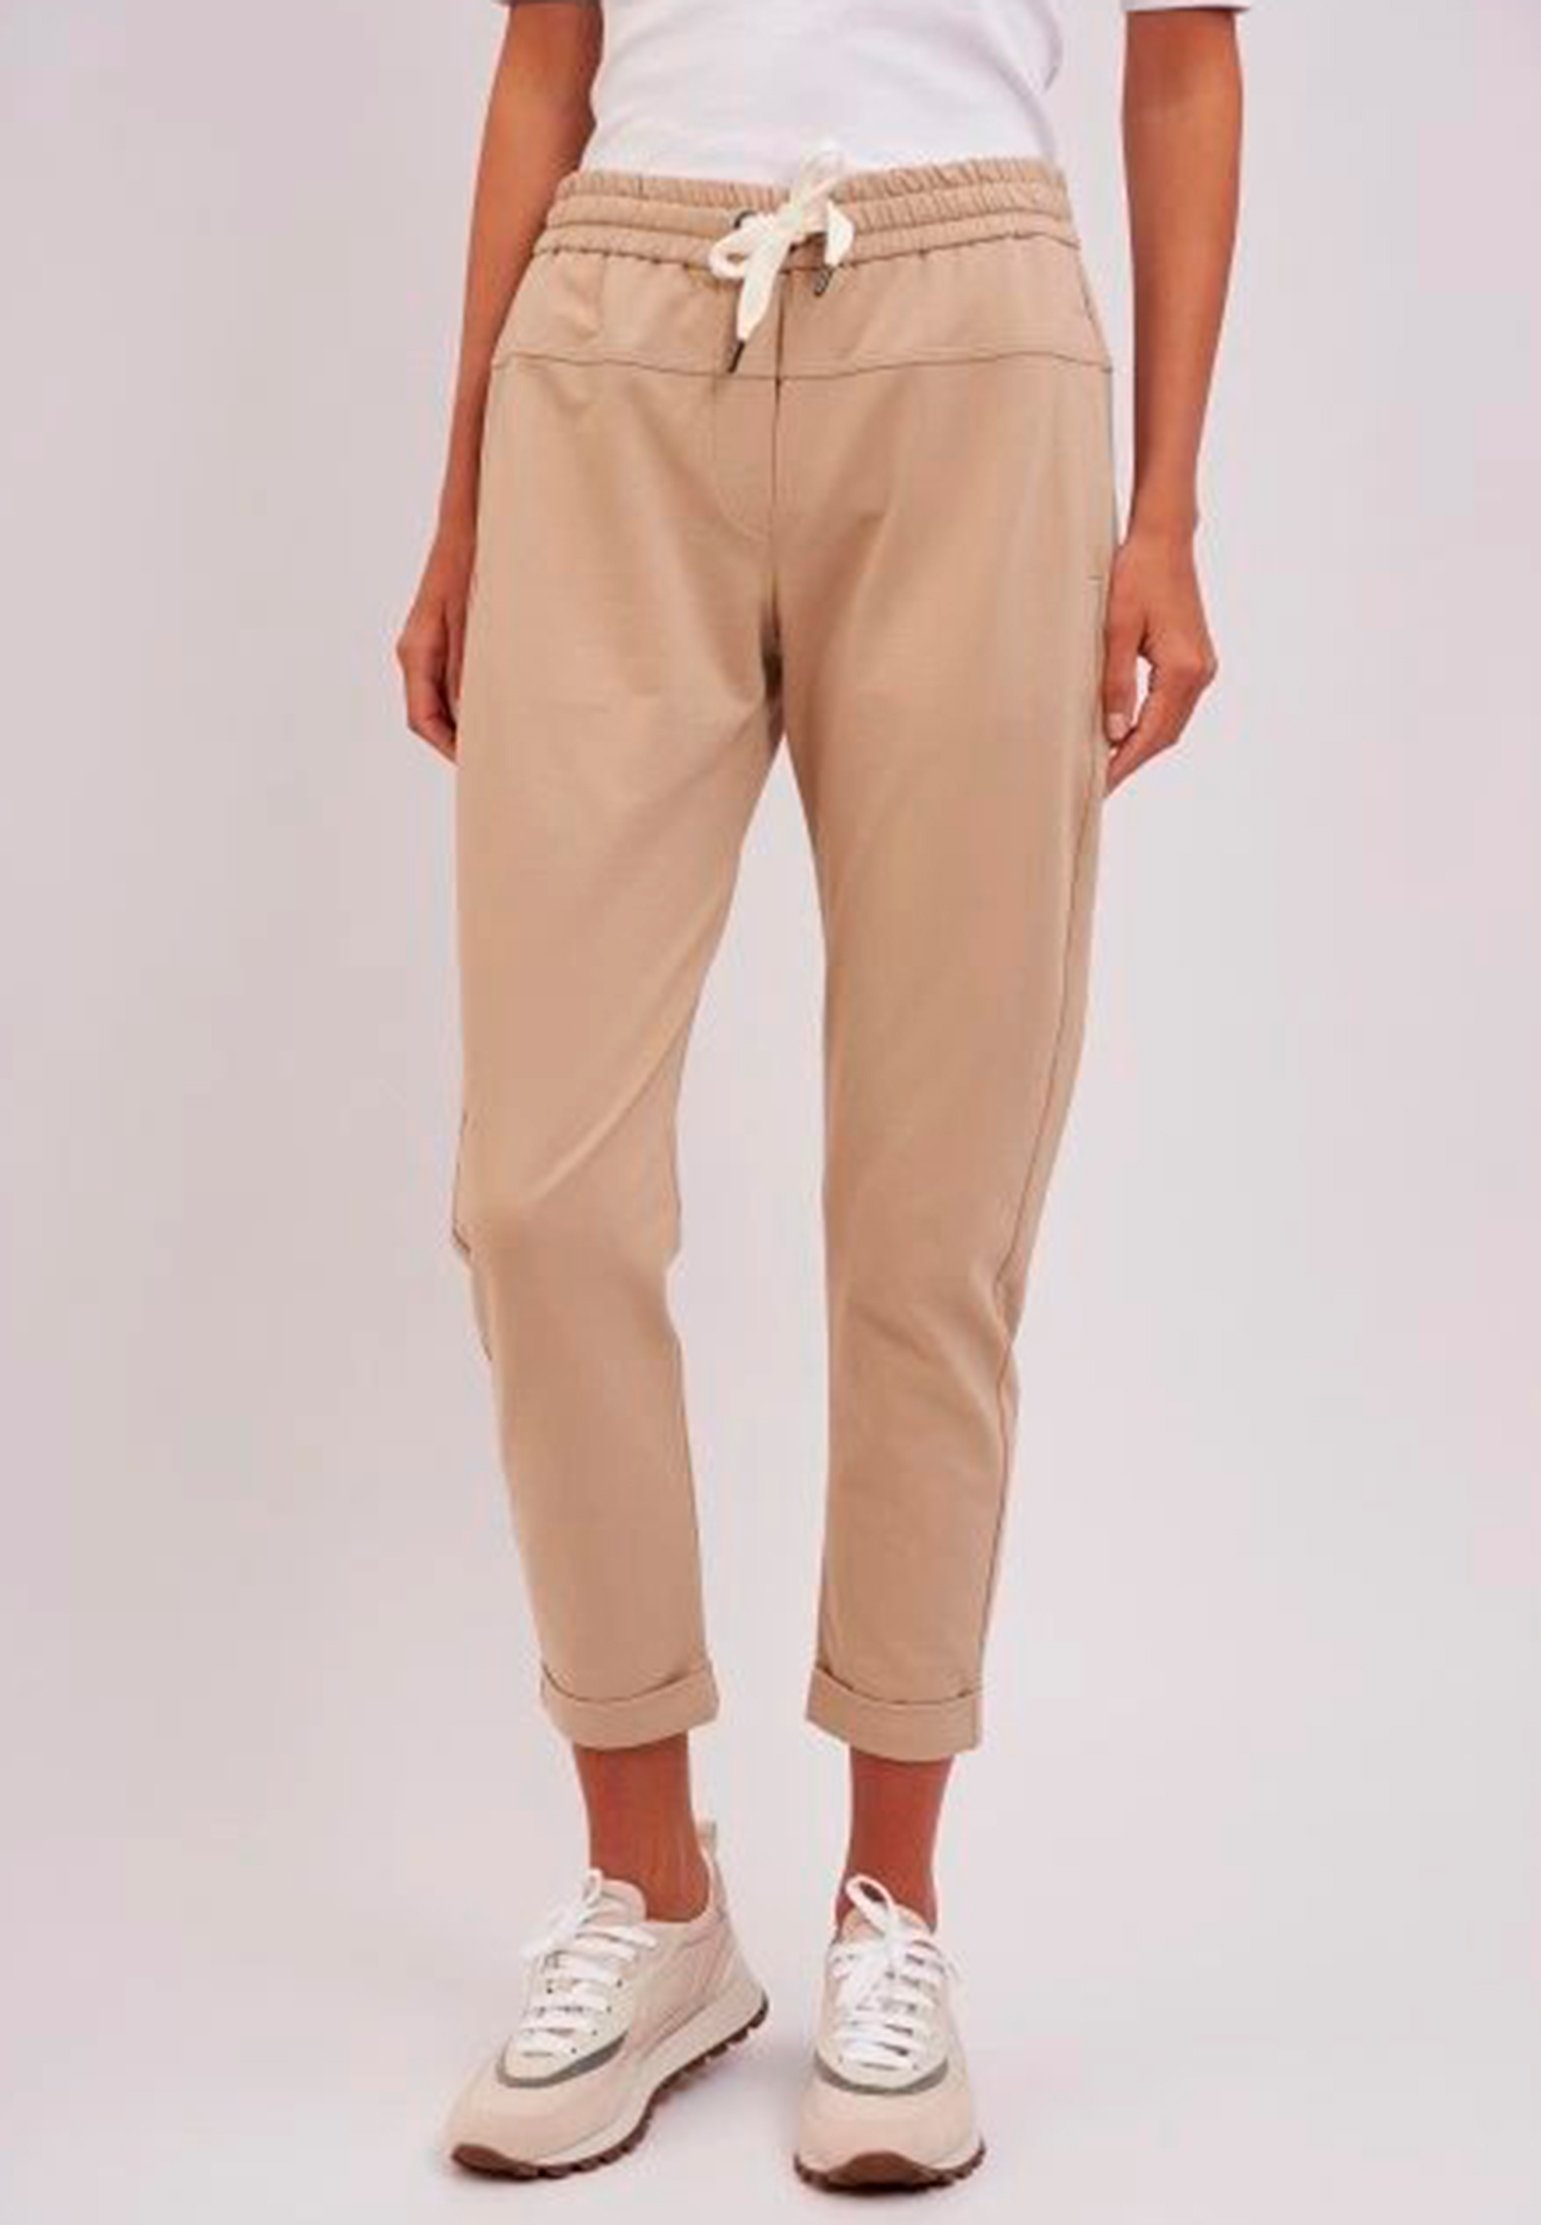 Pants BRUNELLO CUCINELLI Color: beige (Code: 363) in online store Allure